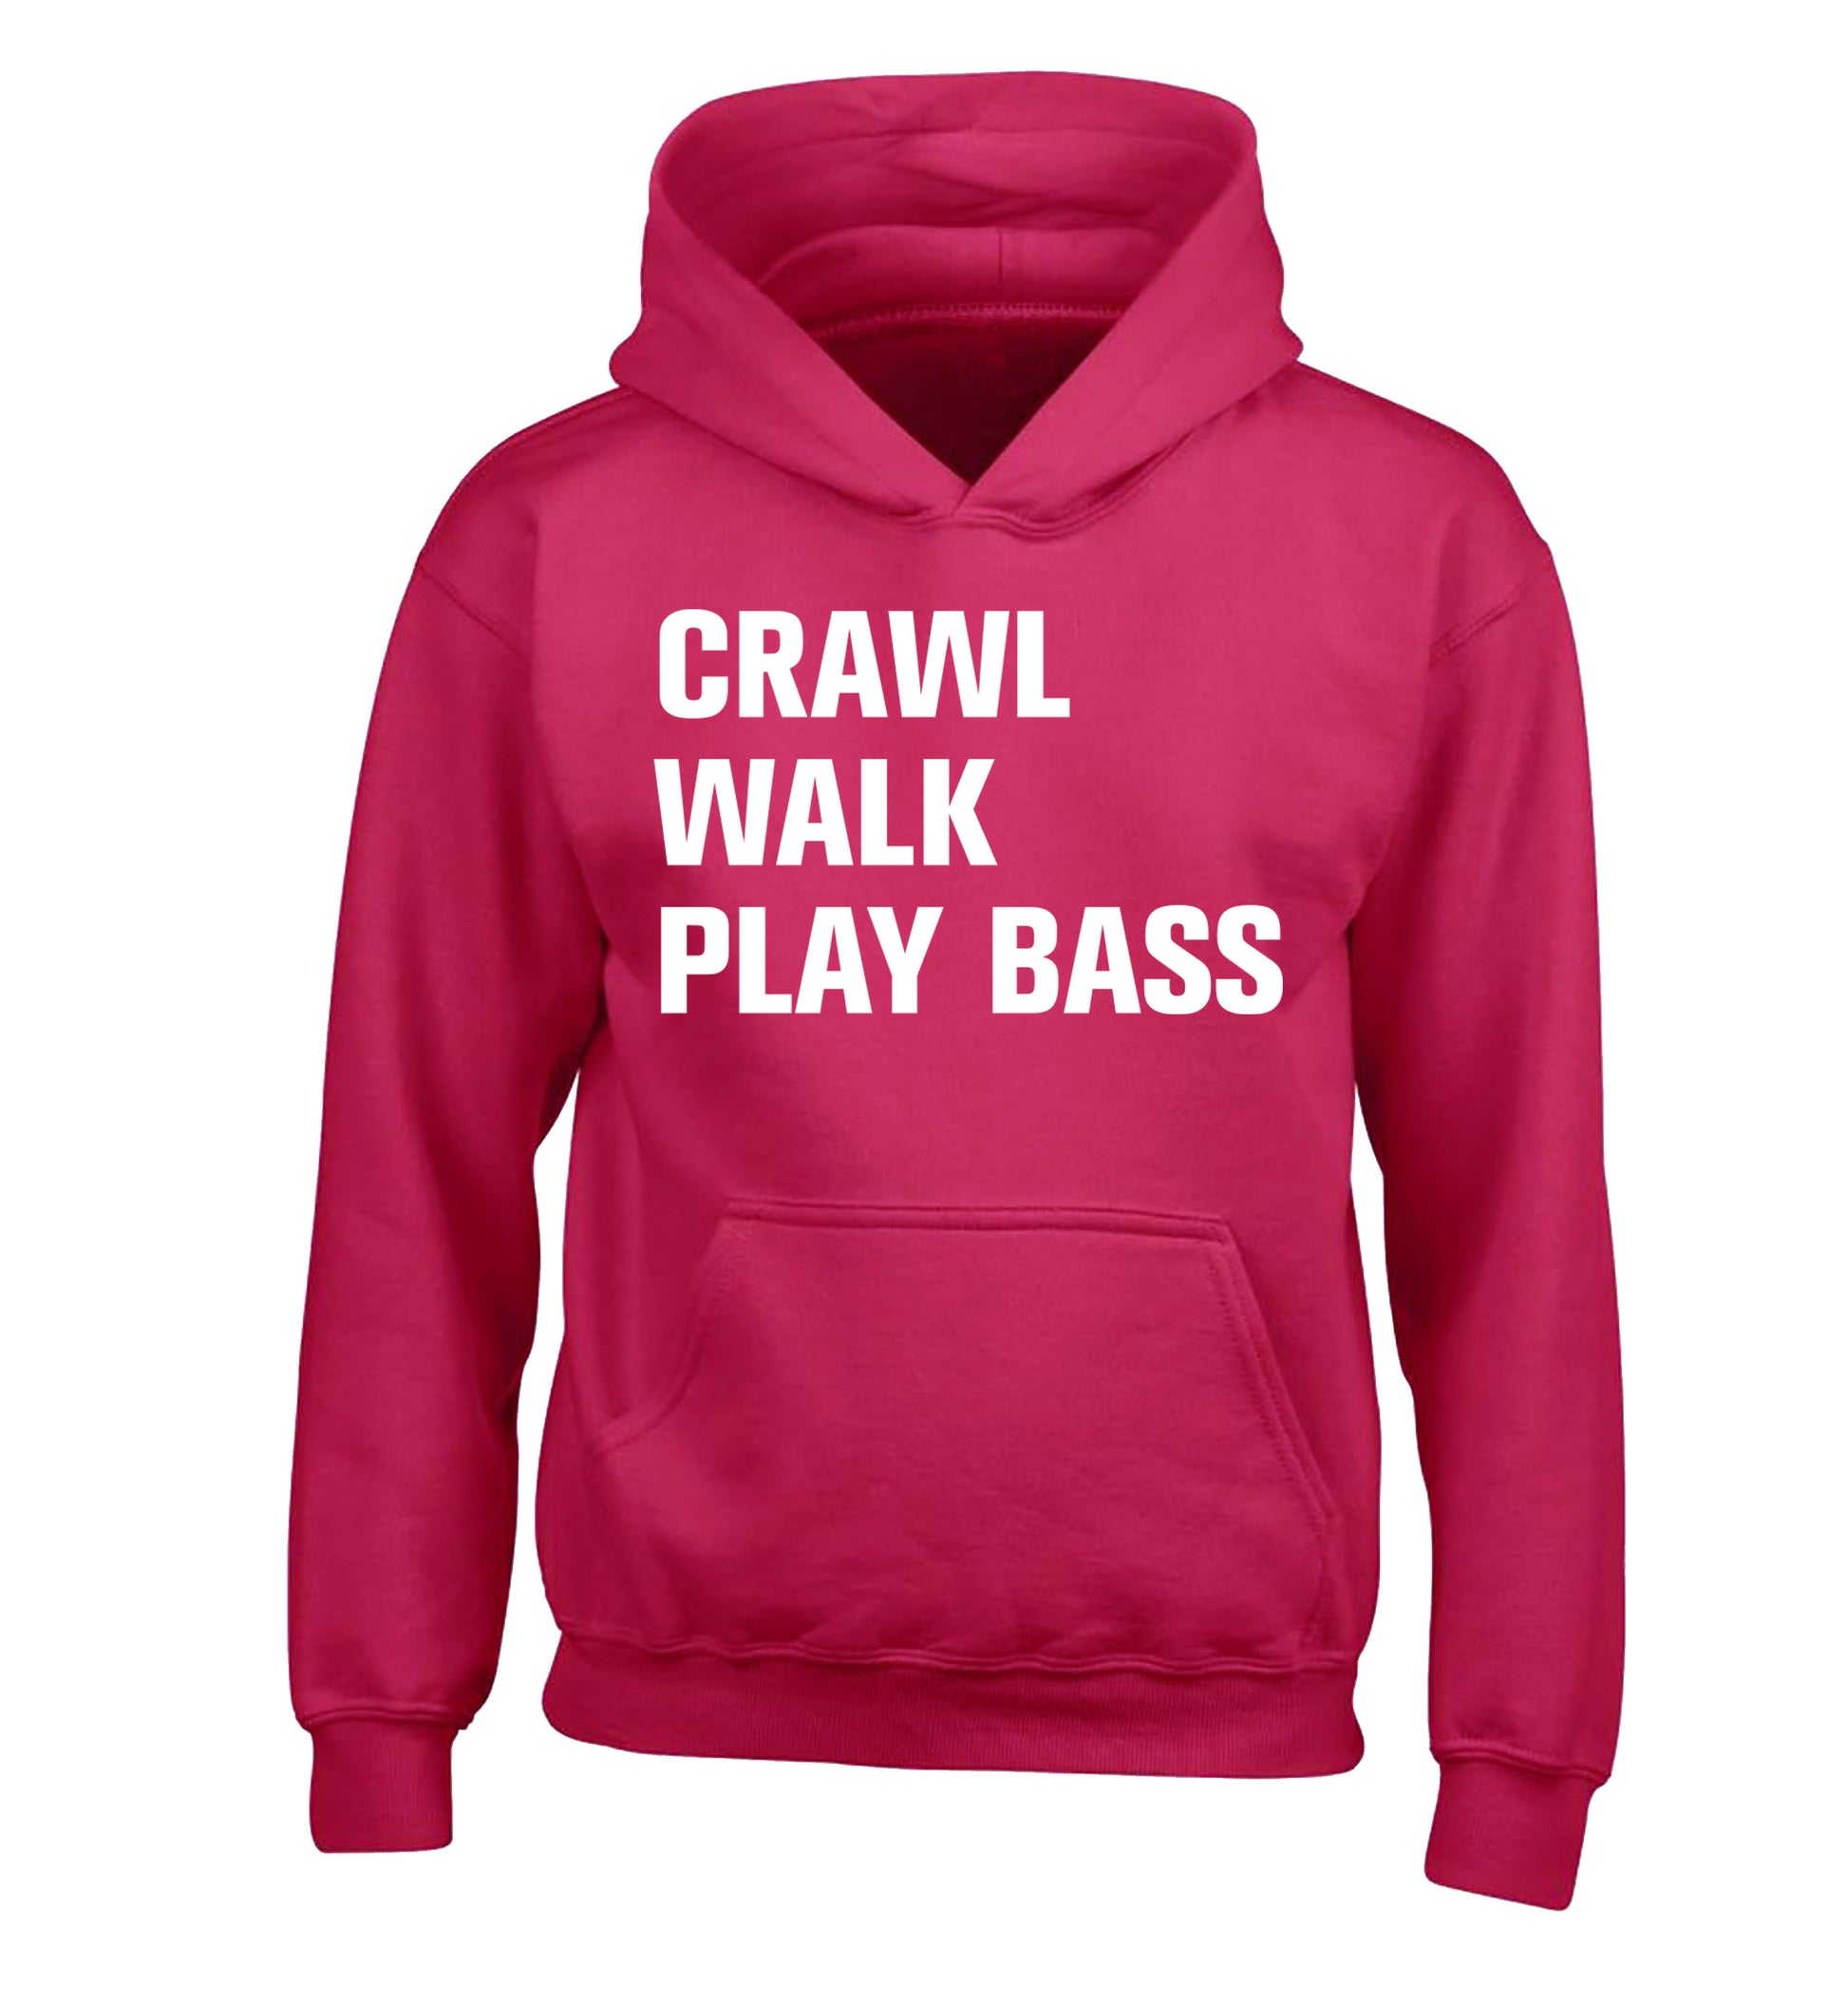 Crawl Walk Play Bass children's pink hoodie 12-13 Years